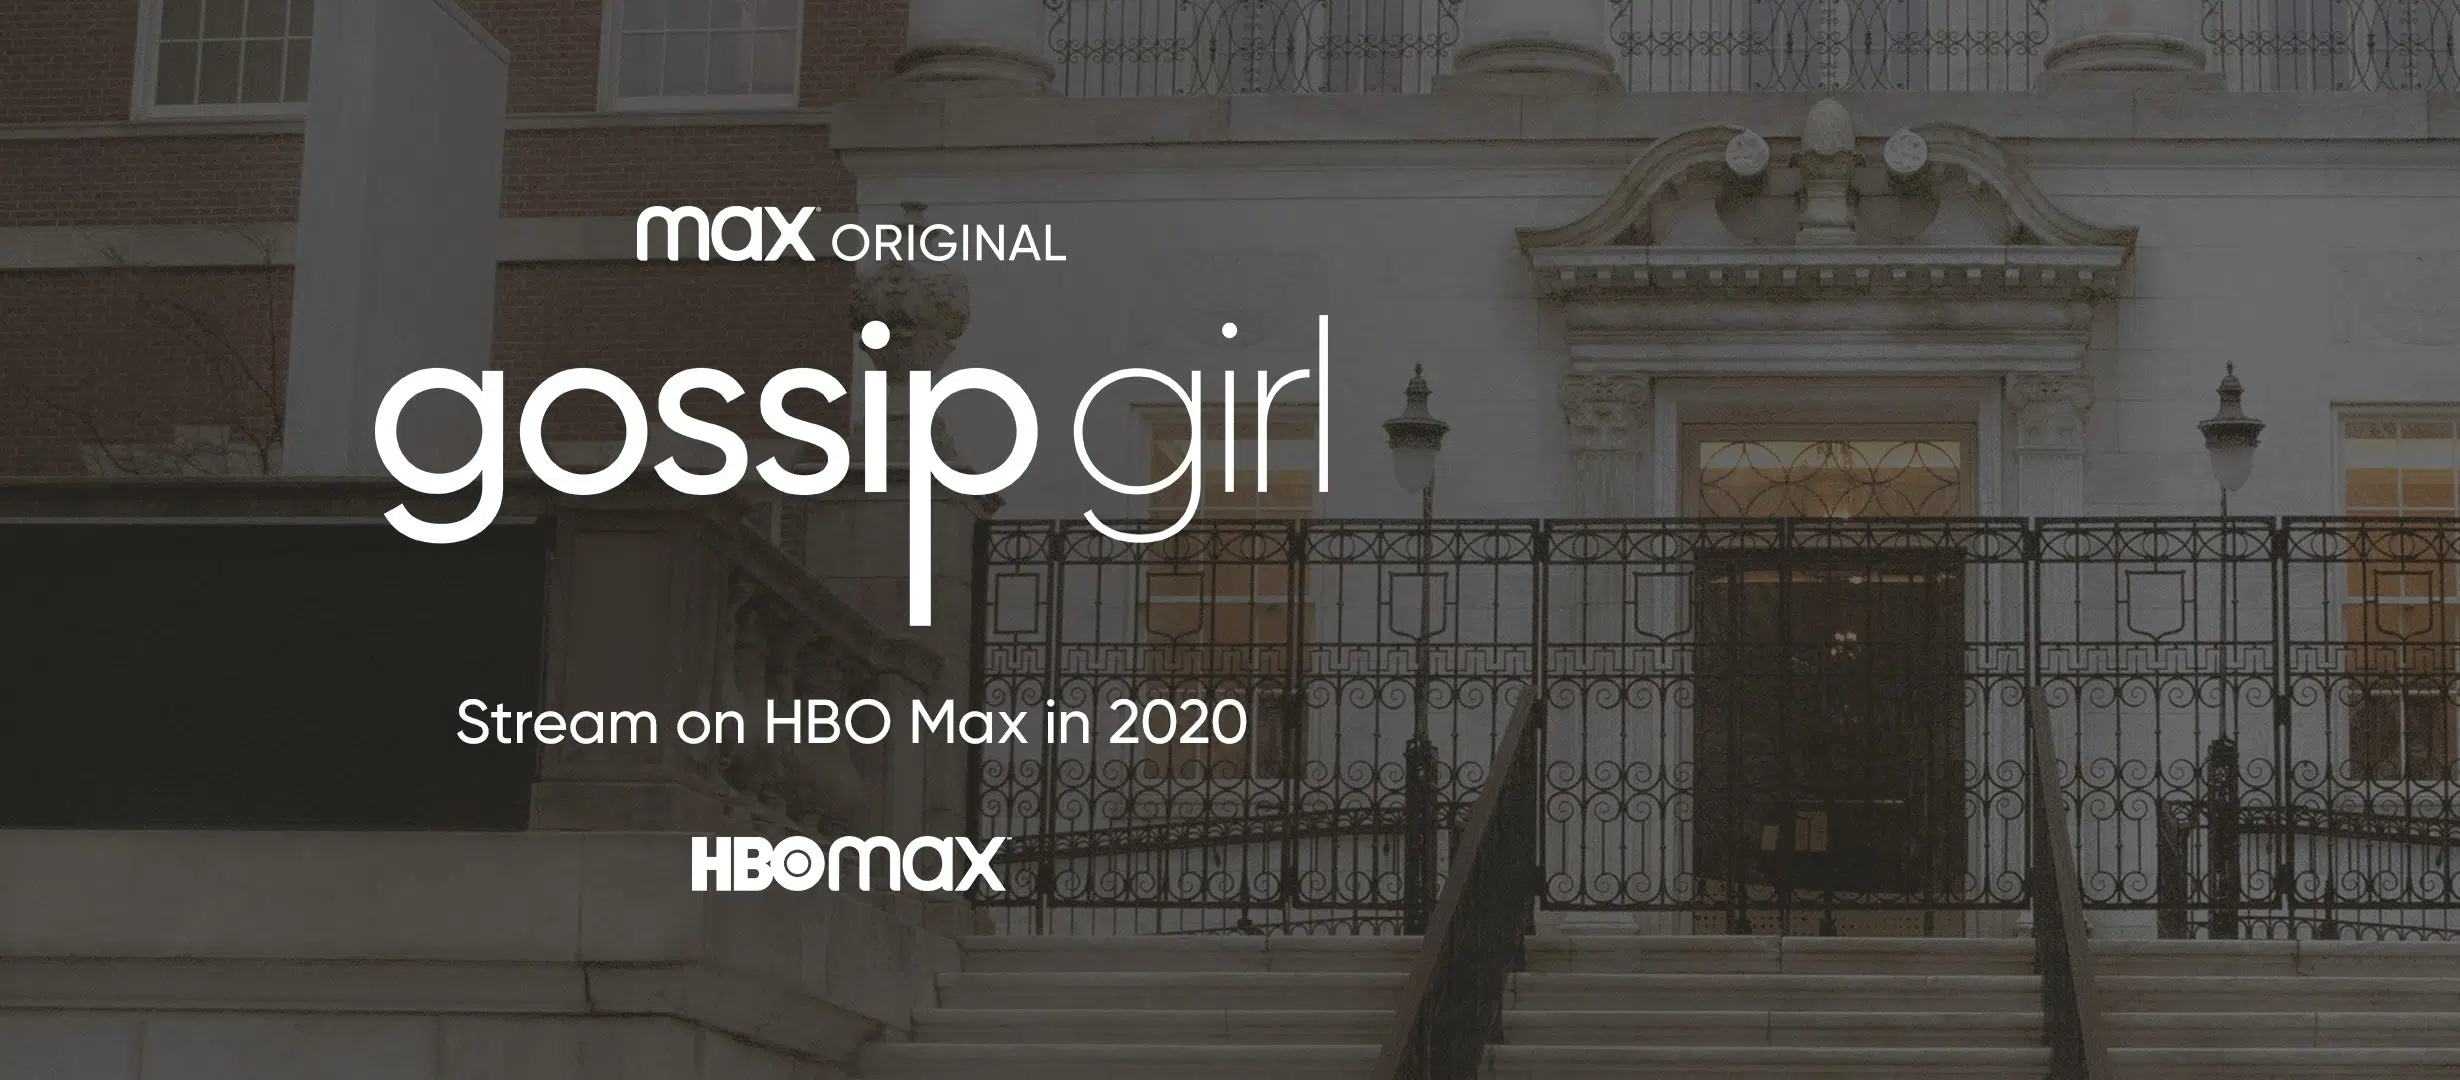 Gossip Girl' reboot postponed to 2021 due to coronavirus - National